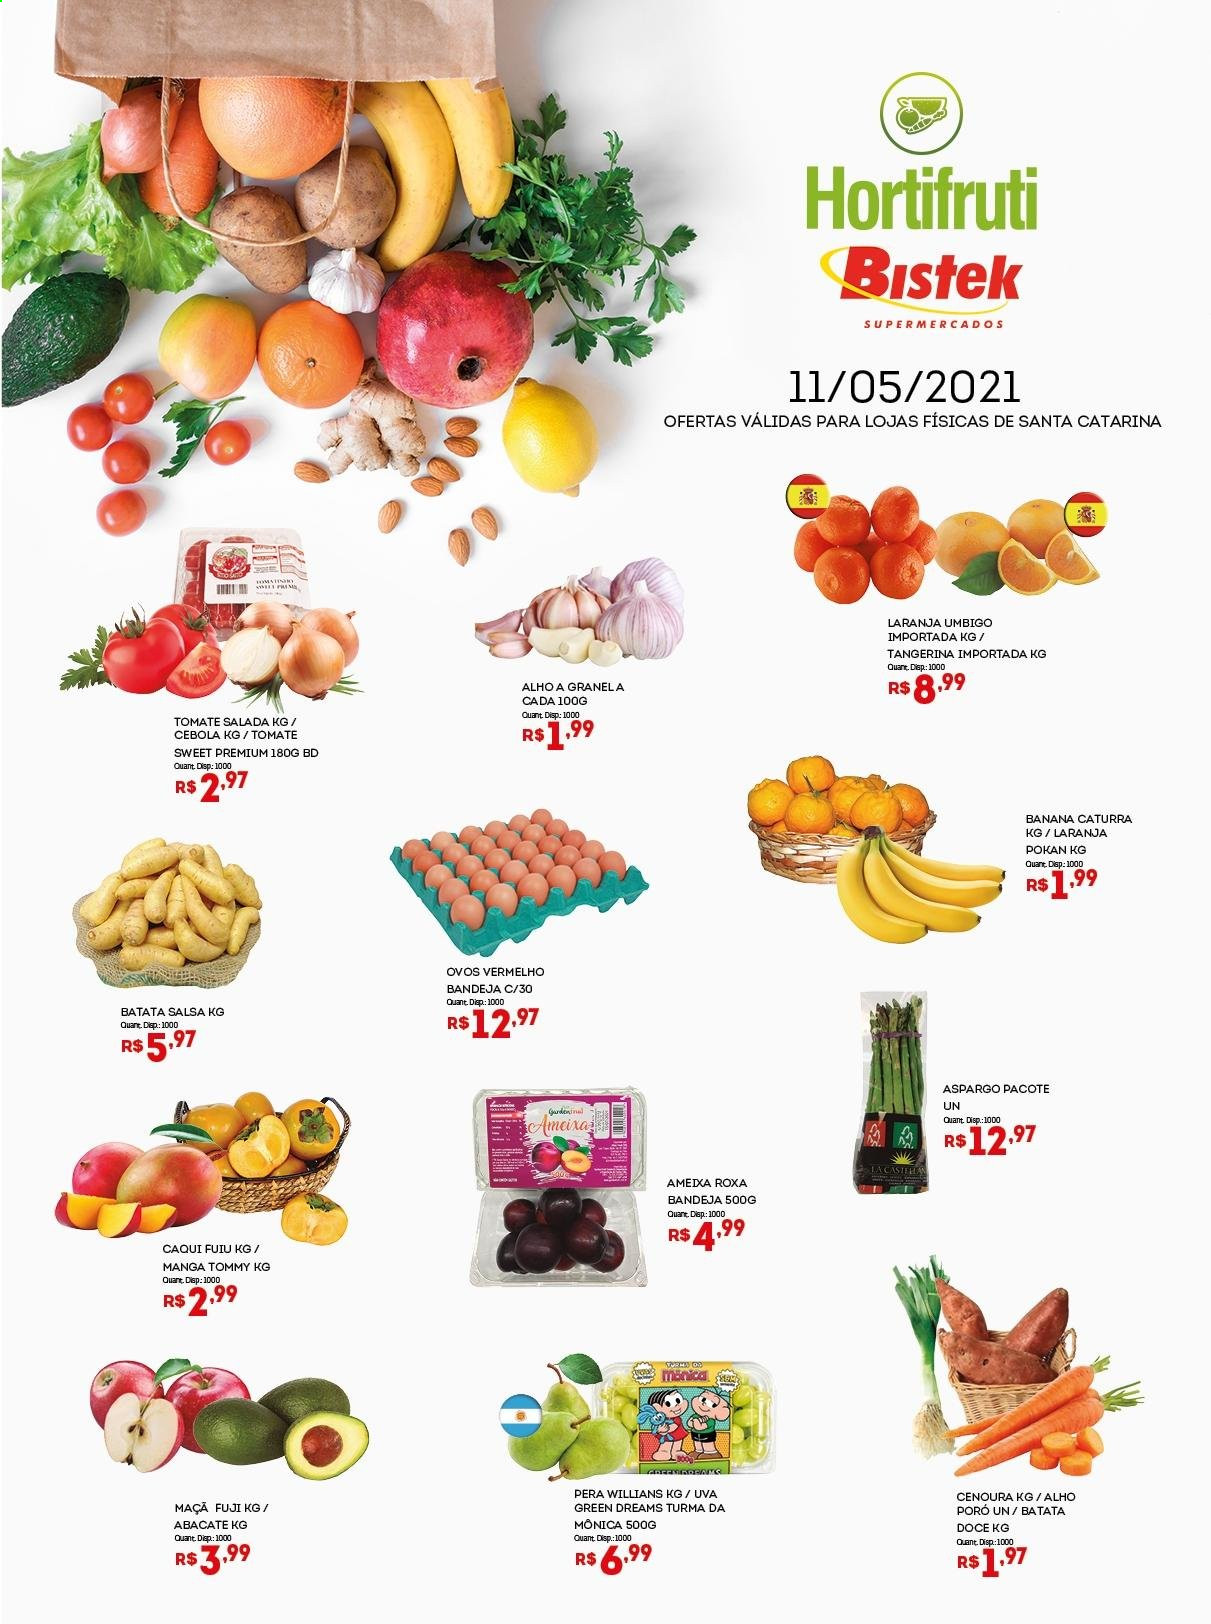 thumbnail - Folheto Bistek Supermercados - 11/05/2021 - 11/05/2021 - Produtos em promoção - banana, maçã, pera, laranja, uva, abacate, tomate, batata, salada, alho, aspargo, cebola, cenoura, ovos, bandeja. Página 1.